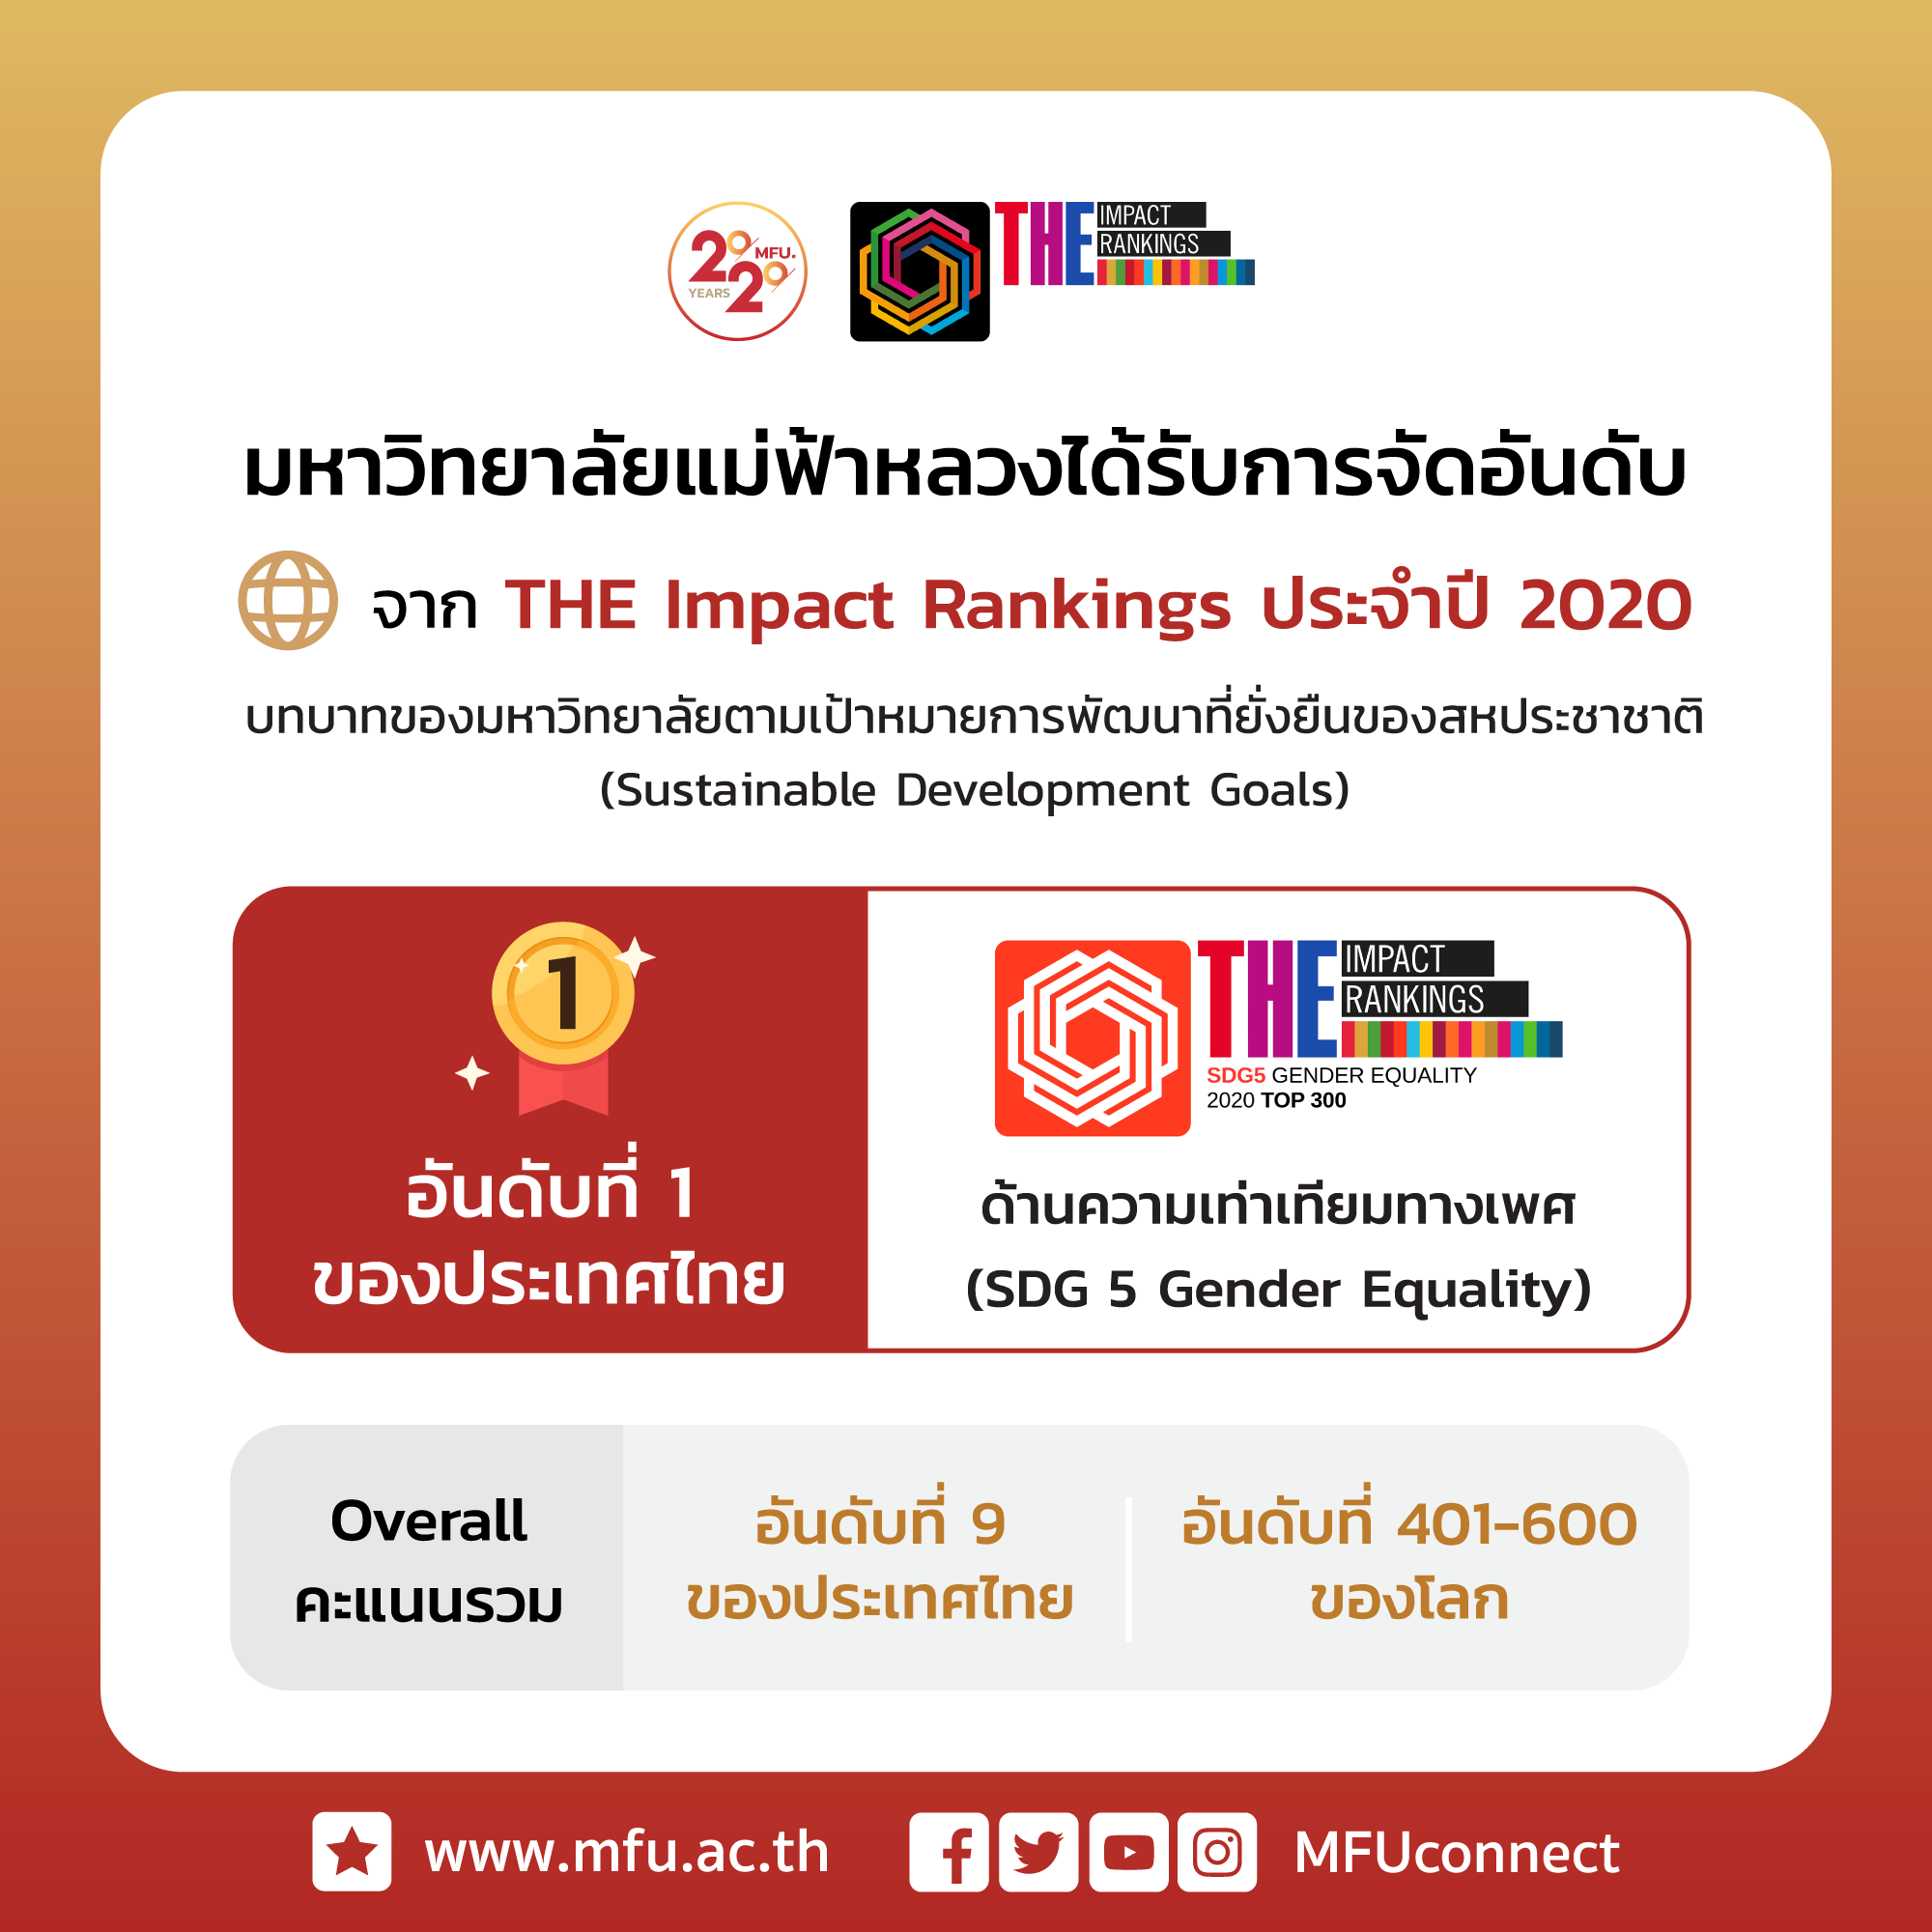 มฟล. อันดับที่ 1 ของประเทศไทยด้านความเท่าเทียมทางเพศ (SDG 5 Gender Equality) ตามการจัดอันดับของ THE Impact Rankings ประจำปี 2020